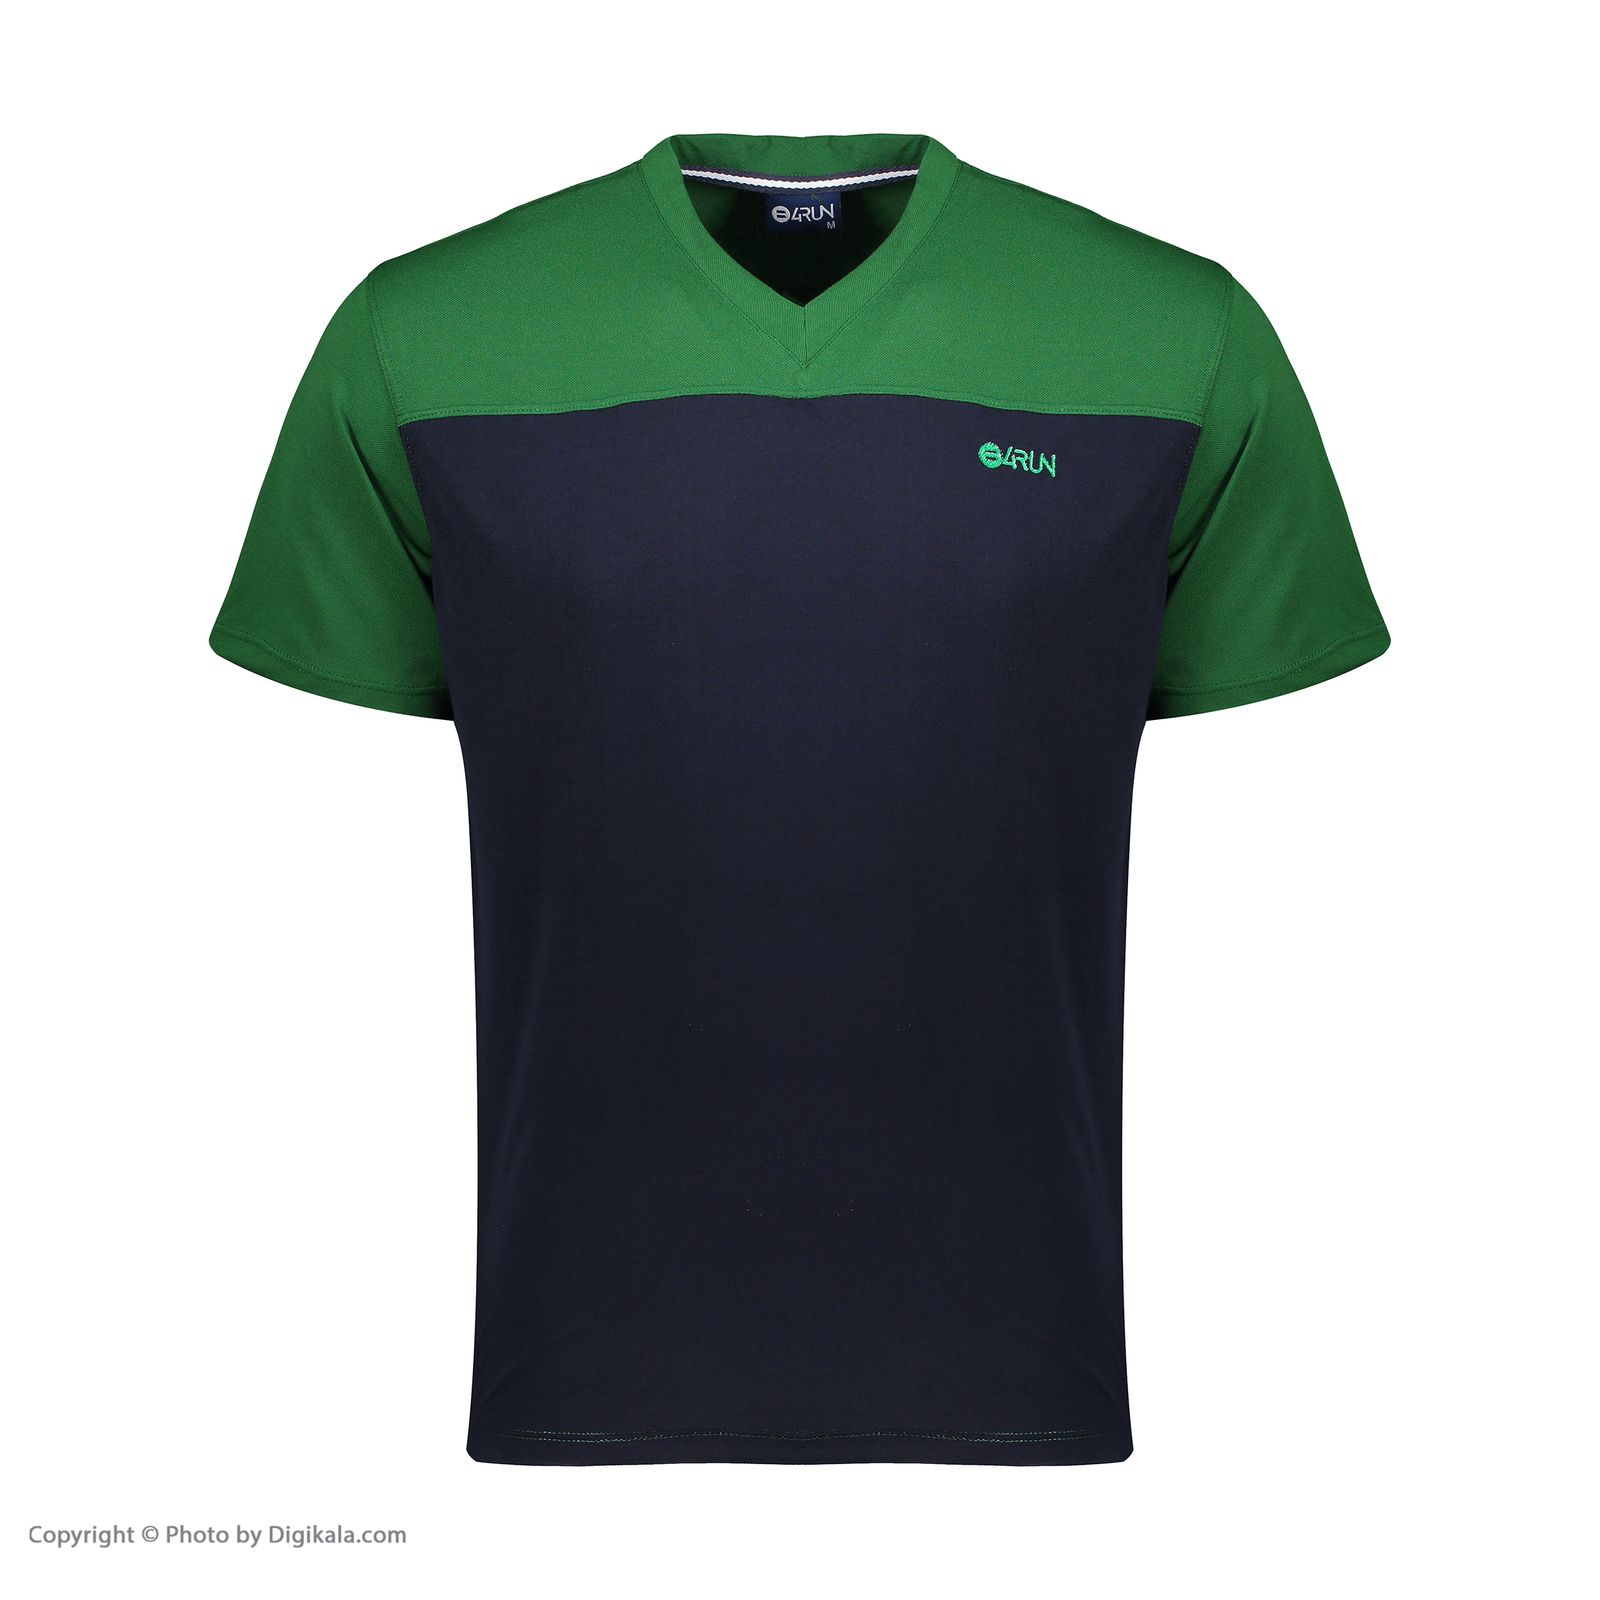 تی شرت ورزشی مردانه بی فور ران مدل 980317-4359 - سبز - سرمه ای - 2